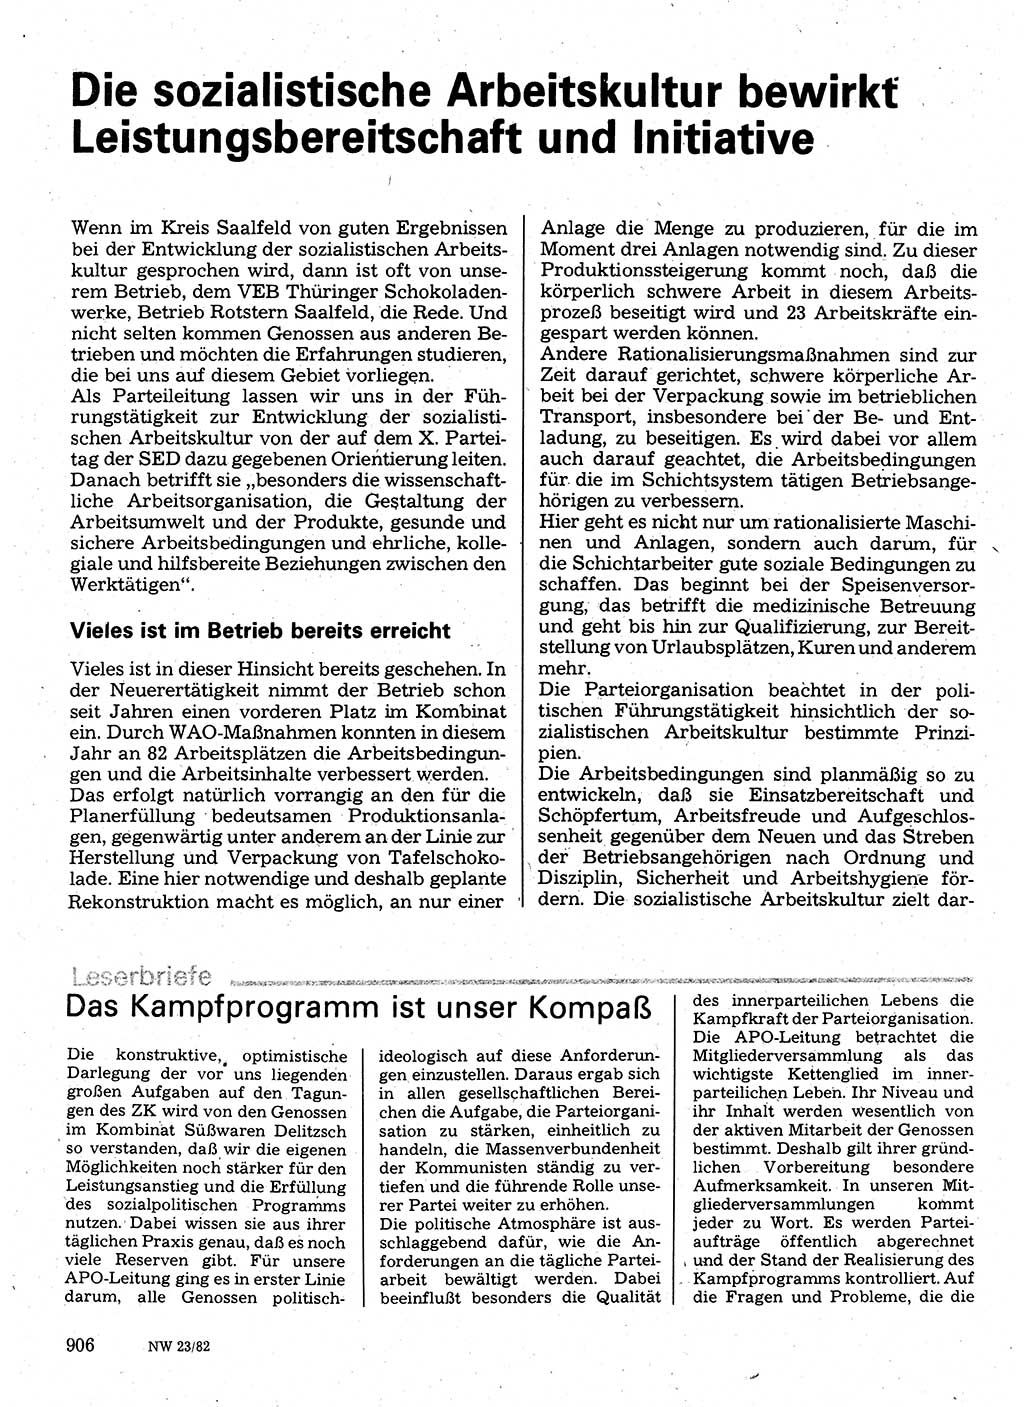 Neuer Weg (NW), Organ des Zentralkomitees (ZK) der SED (Sozialistische Einheitspartei Deutschlands) für Fragen des Parteilebens, 37. Jahrgang [Deutsche Demokratische Republik (DDR)] 1982, Seite 906 (NW ZK SED DDR 1982, S. 906)